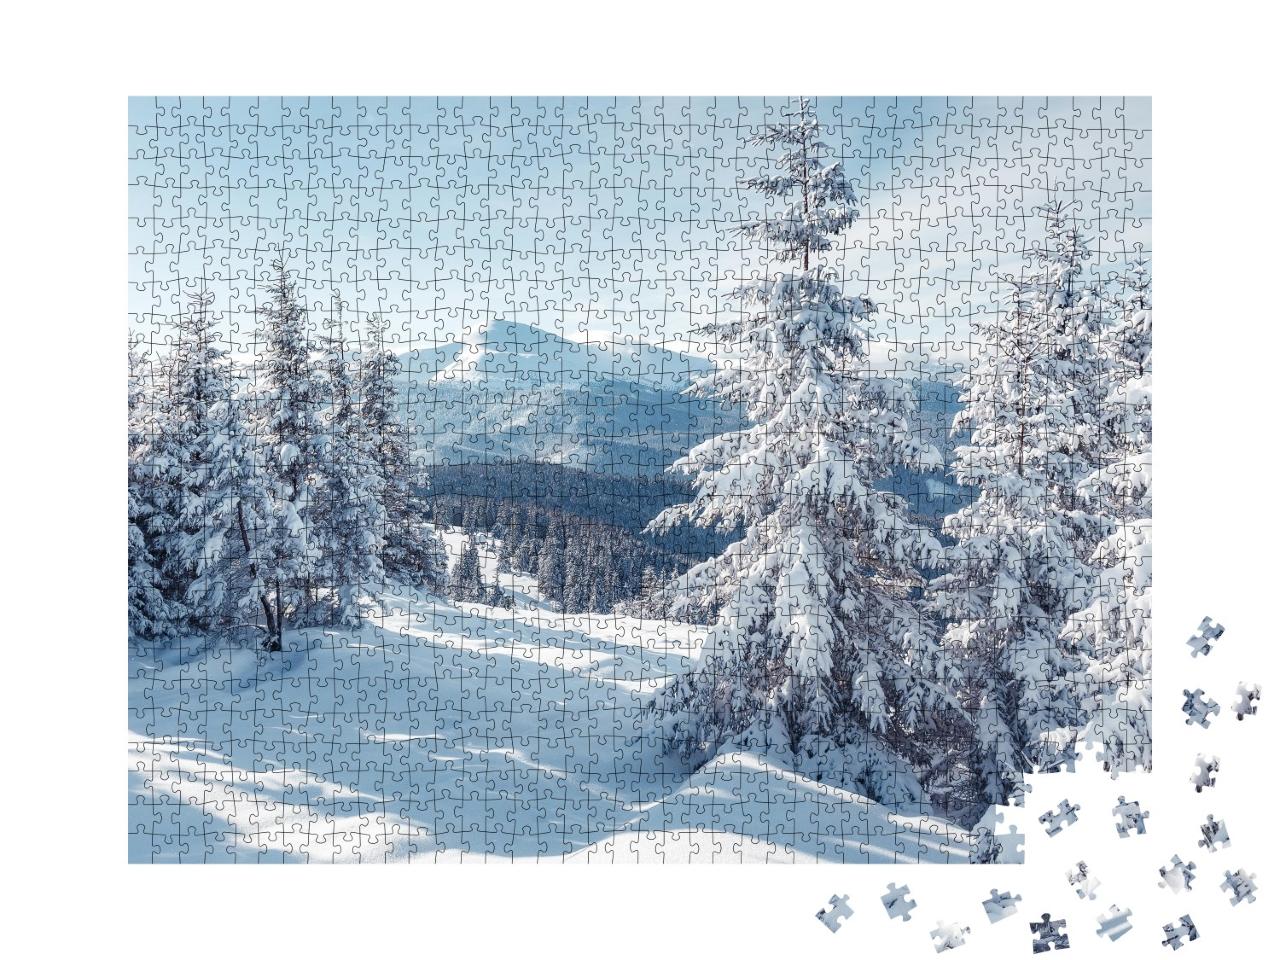 Puzzle de 1000 pièces « Magnifique paysage alpin en hiver »